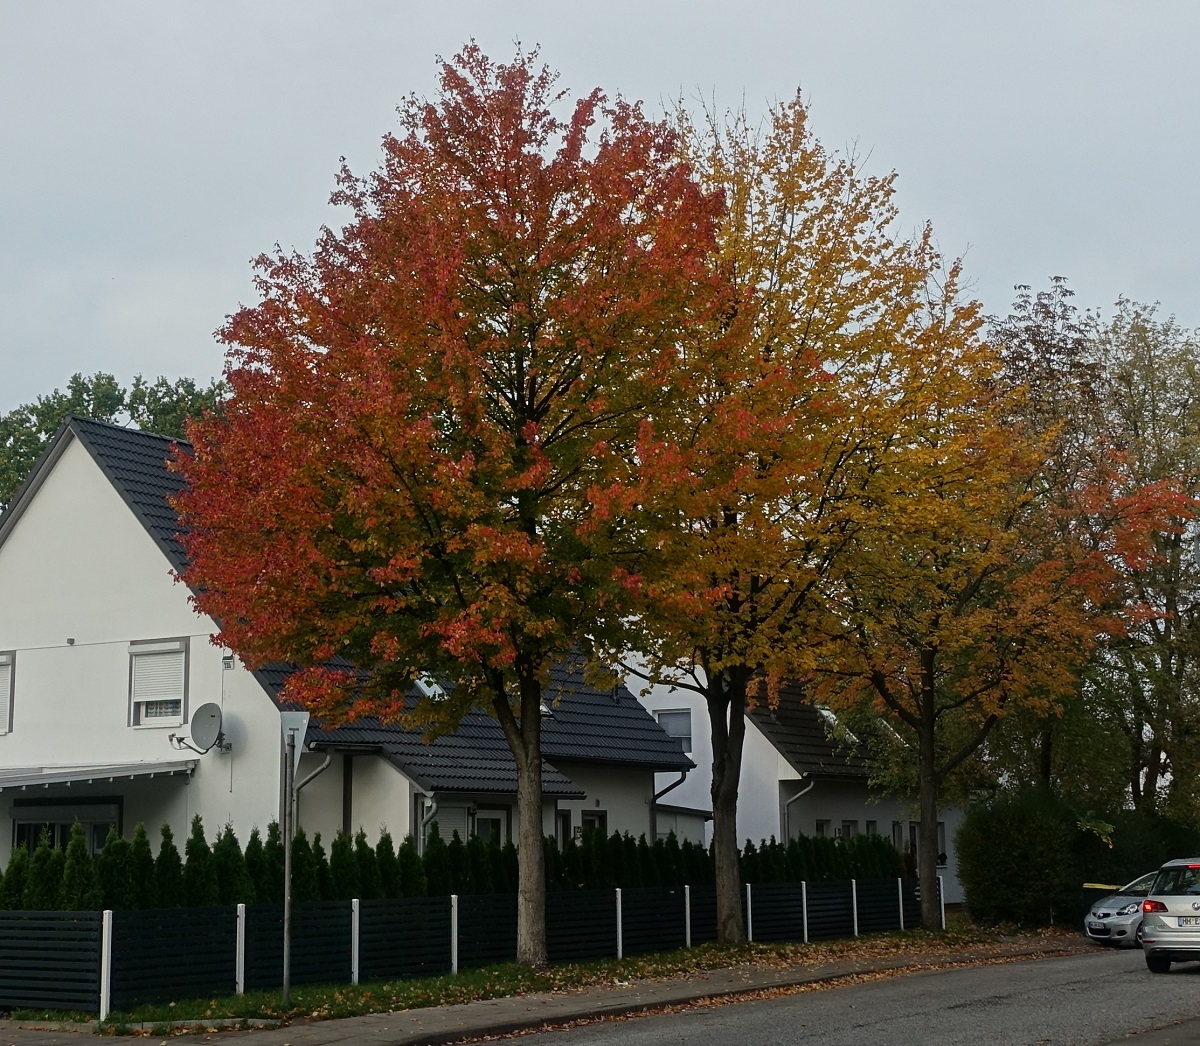 Bunter Herbst in Hamburg, im Stadtteil Billstedt am 23.10.2020 /